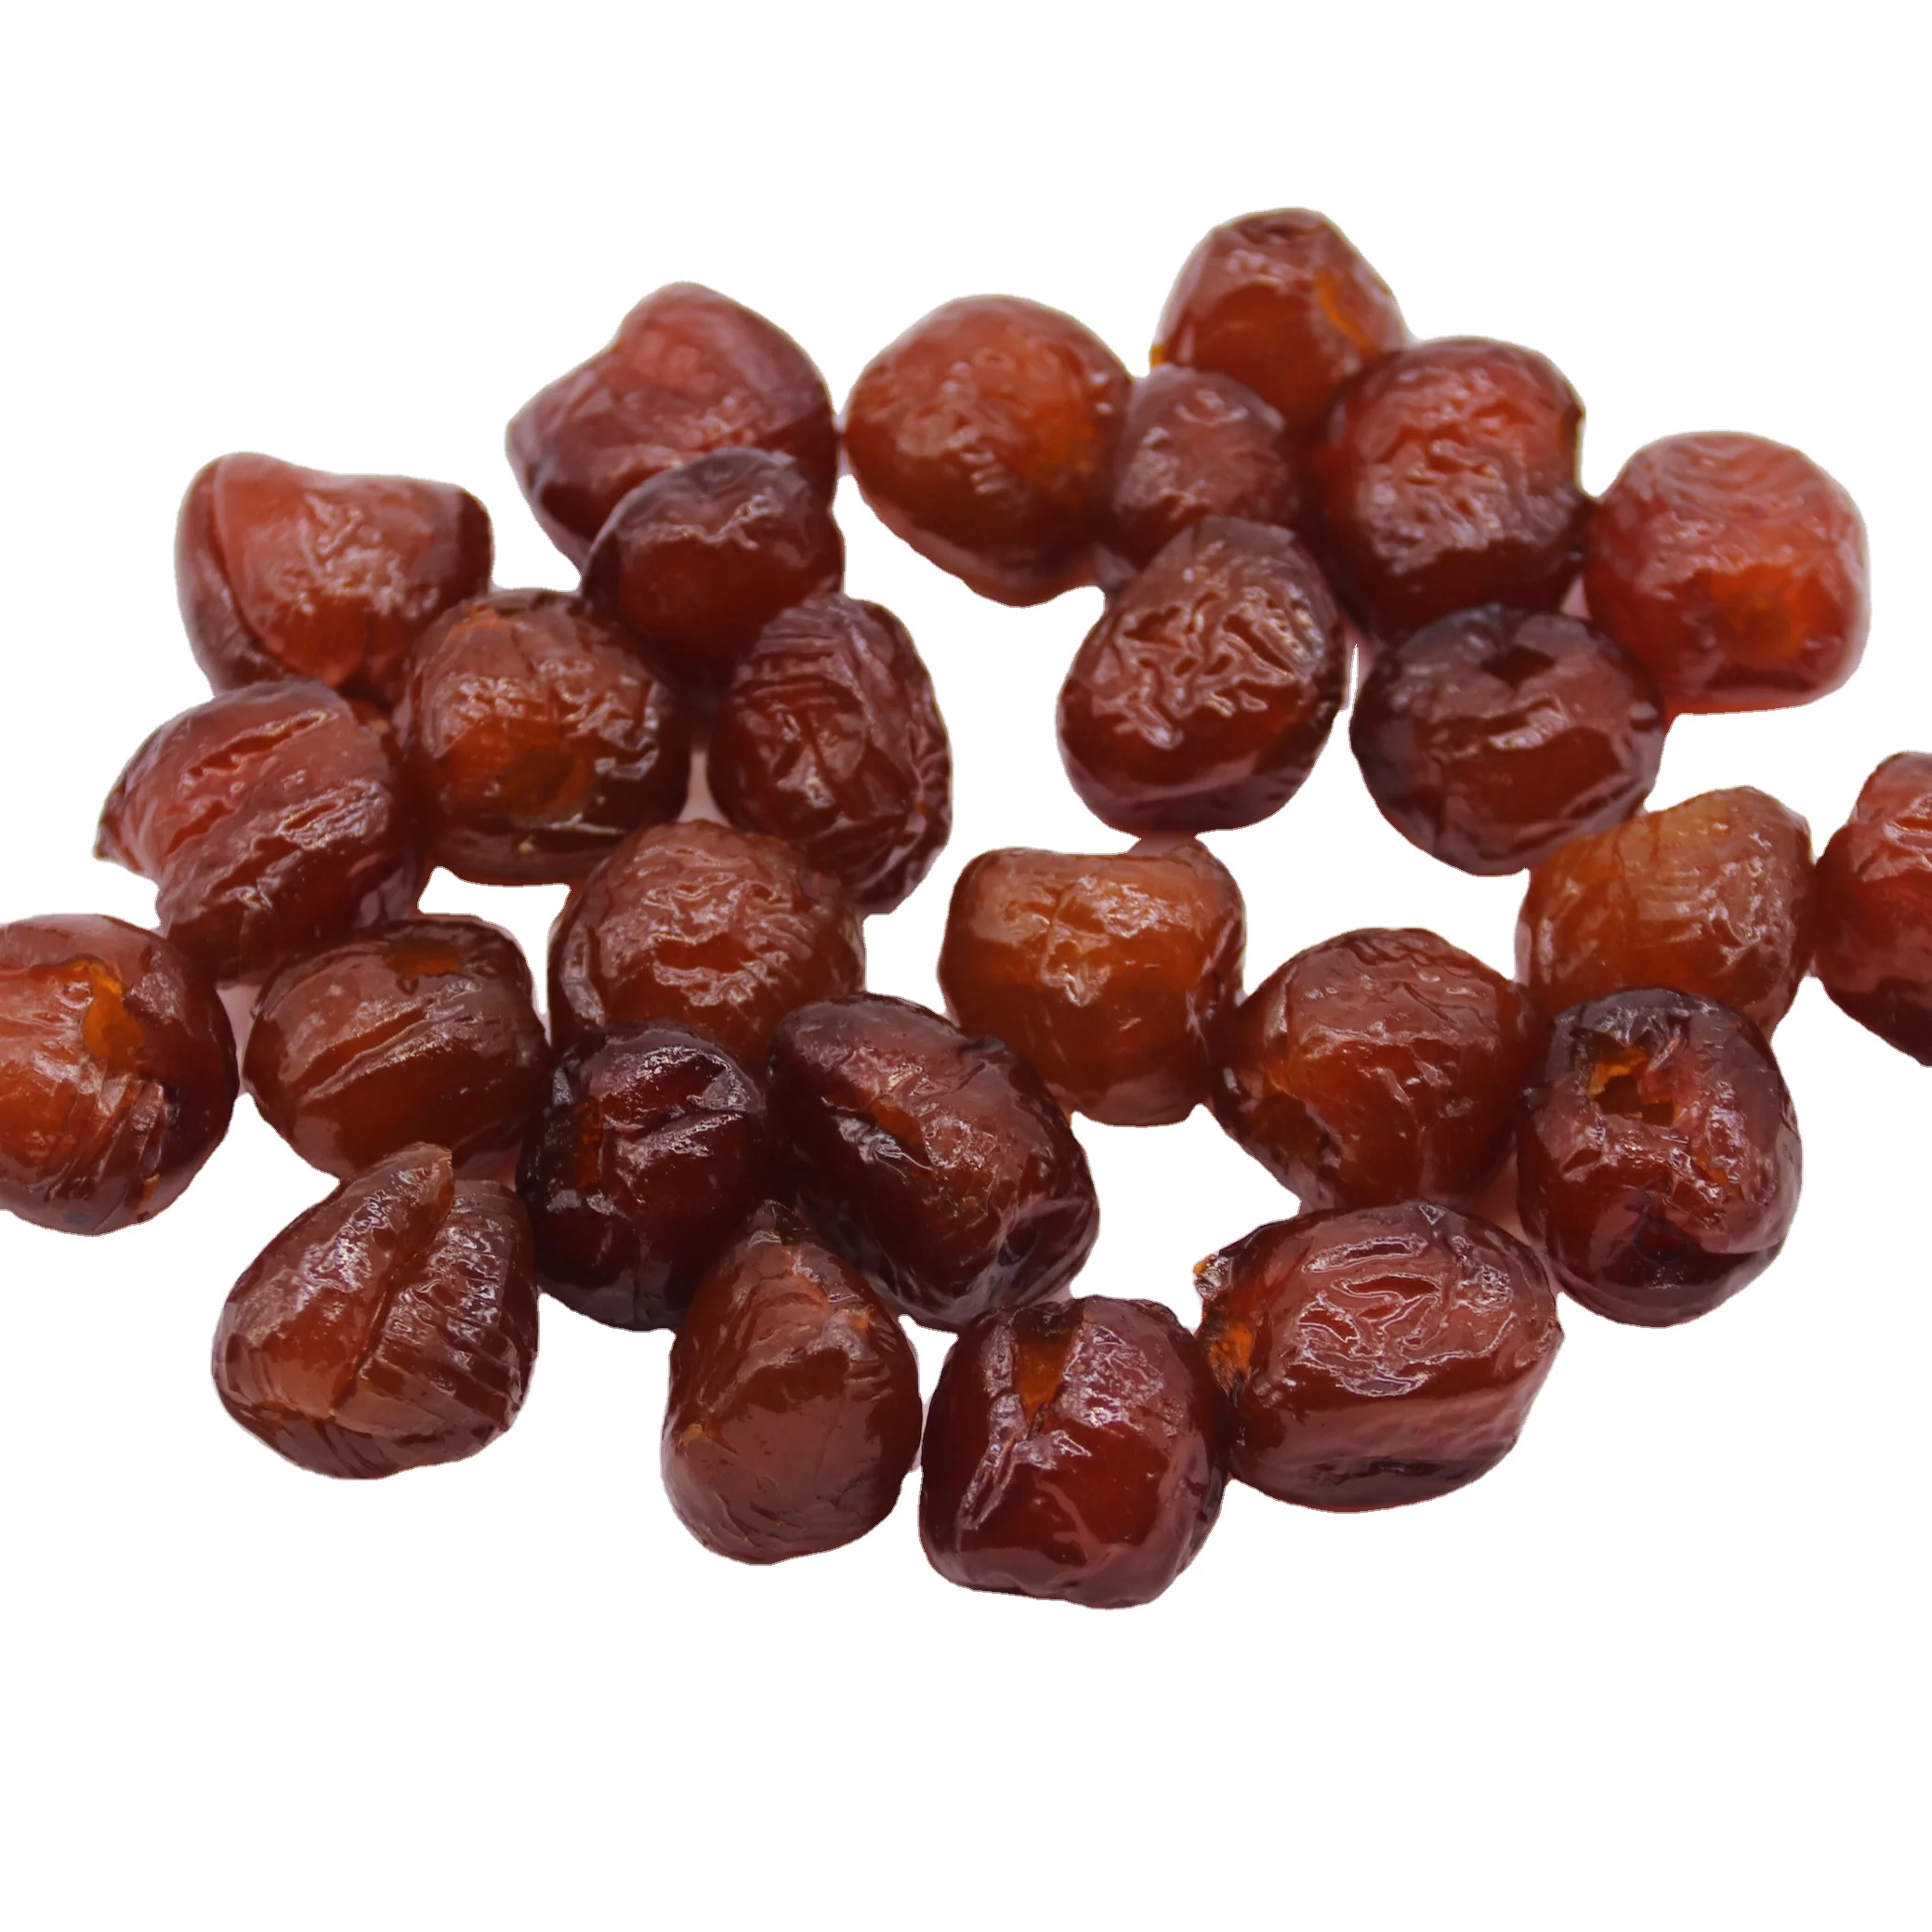 Китай, оптовая цена, сладкий вкус, сушеные фрукты красного цвета, сушеная Дата jujube (Сохраненная дата) (60355151483)